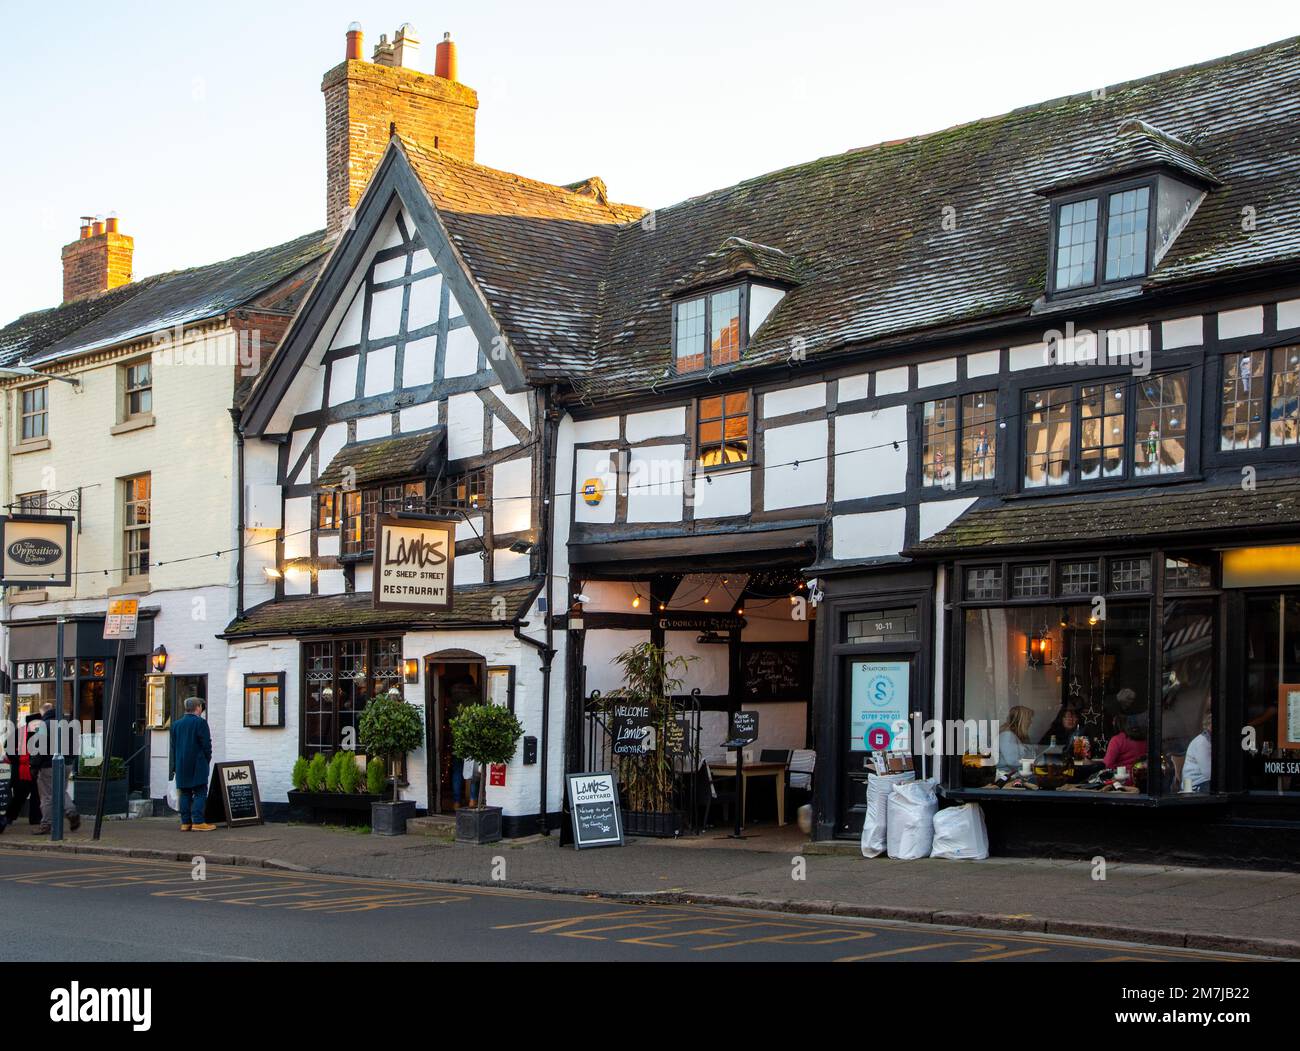 Lambs Restaurant befindet sich in der Sheep Street, Stratford on Avon, einem der ältesten Gebäude der Stadt. Es stammt aus dem frühen 16. Jahrhundert Stockfoto